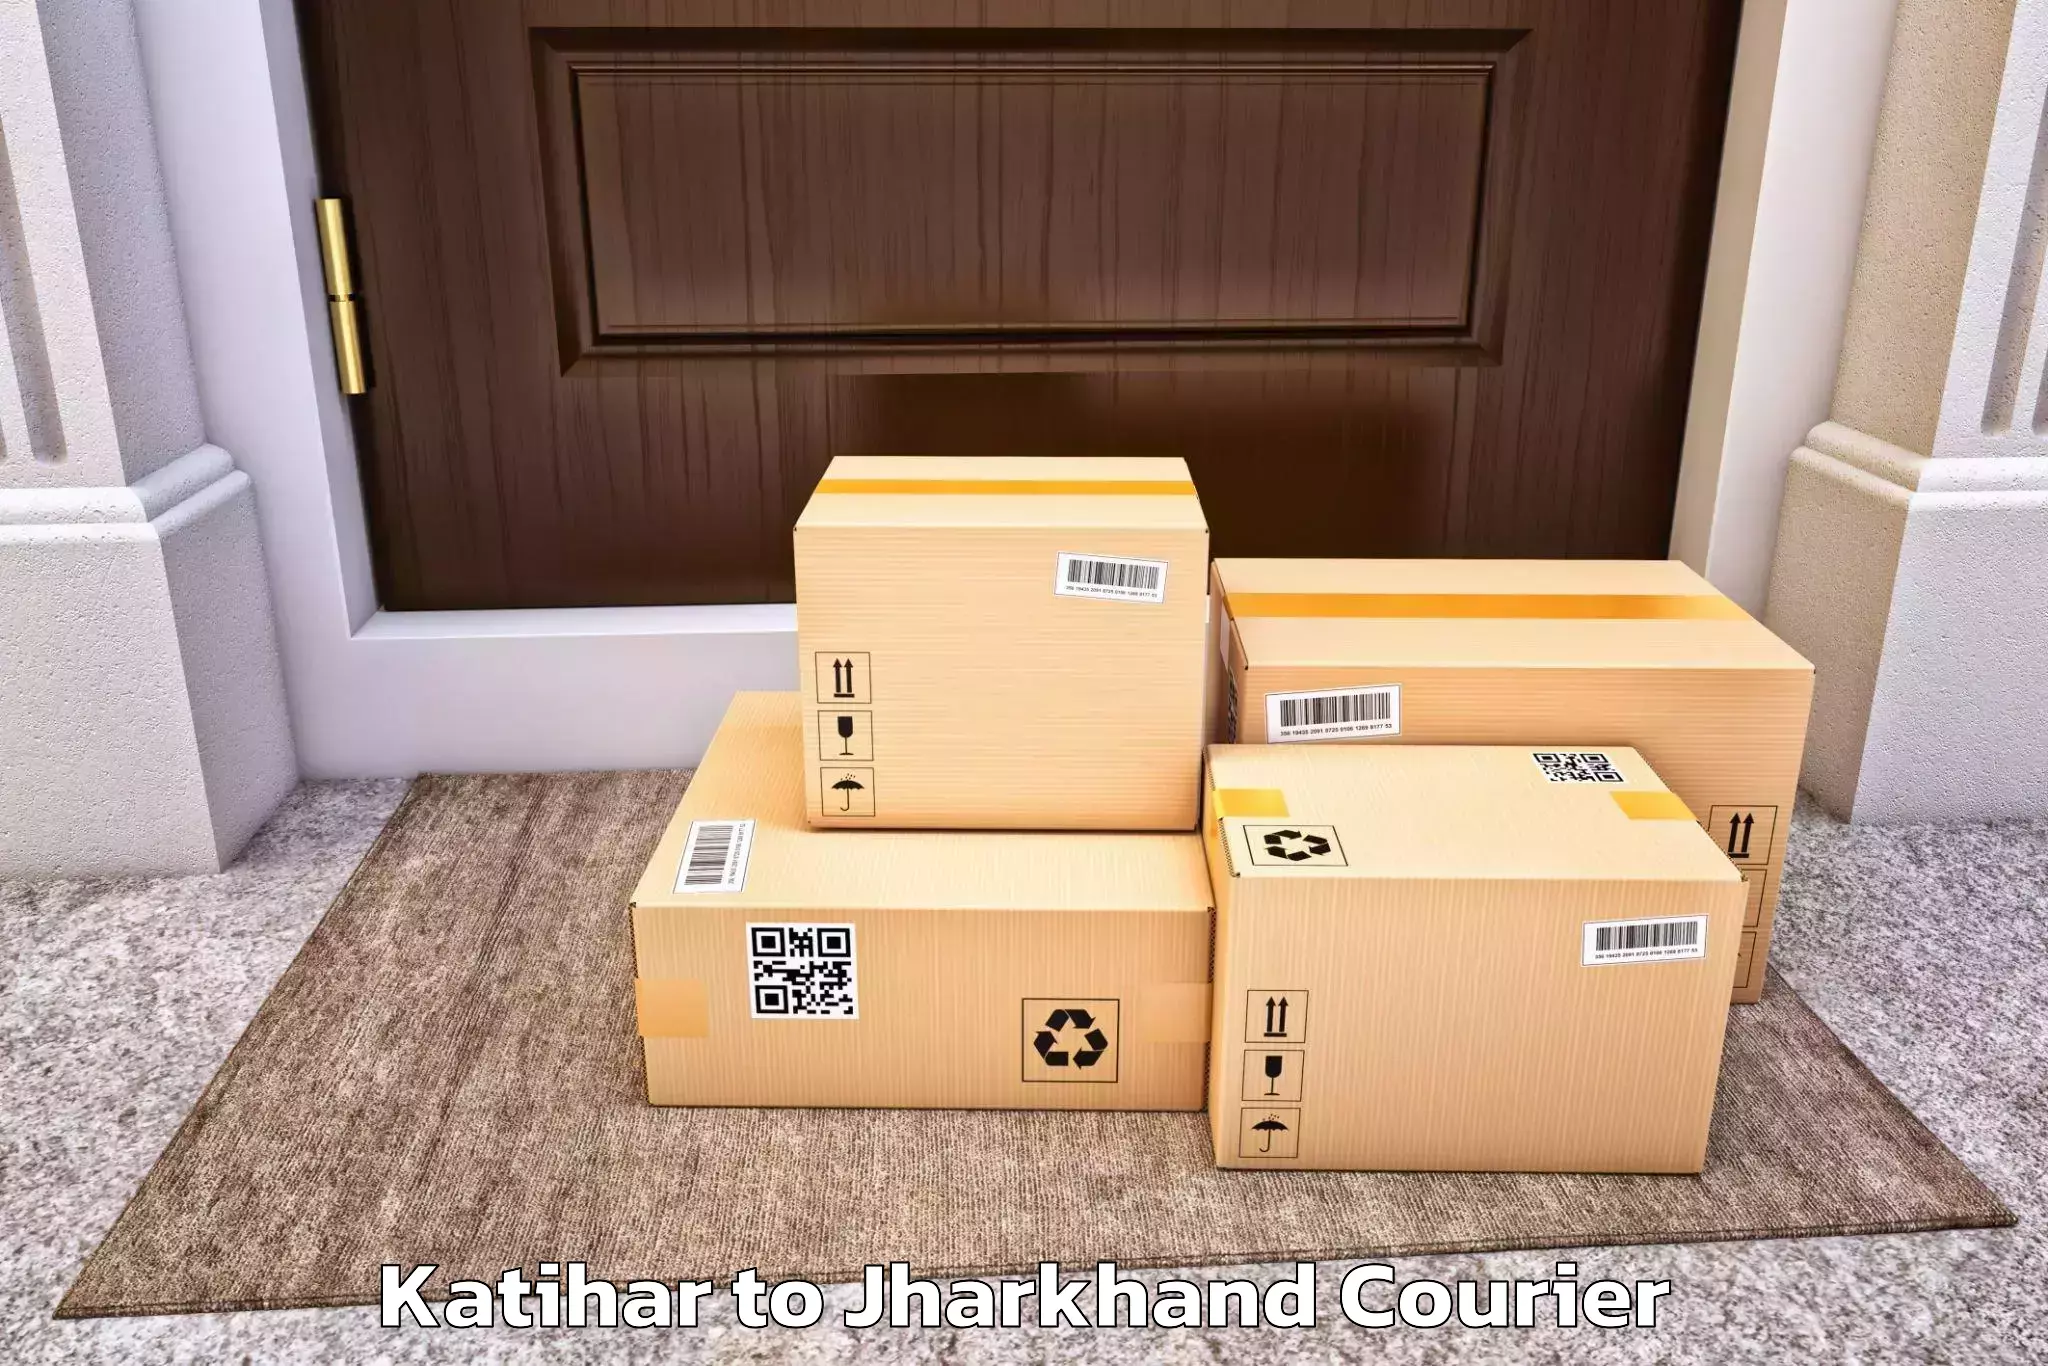 Furniture moving experts Katihar to Patan Palamu